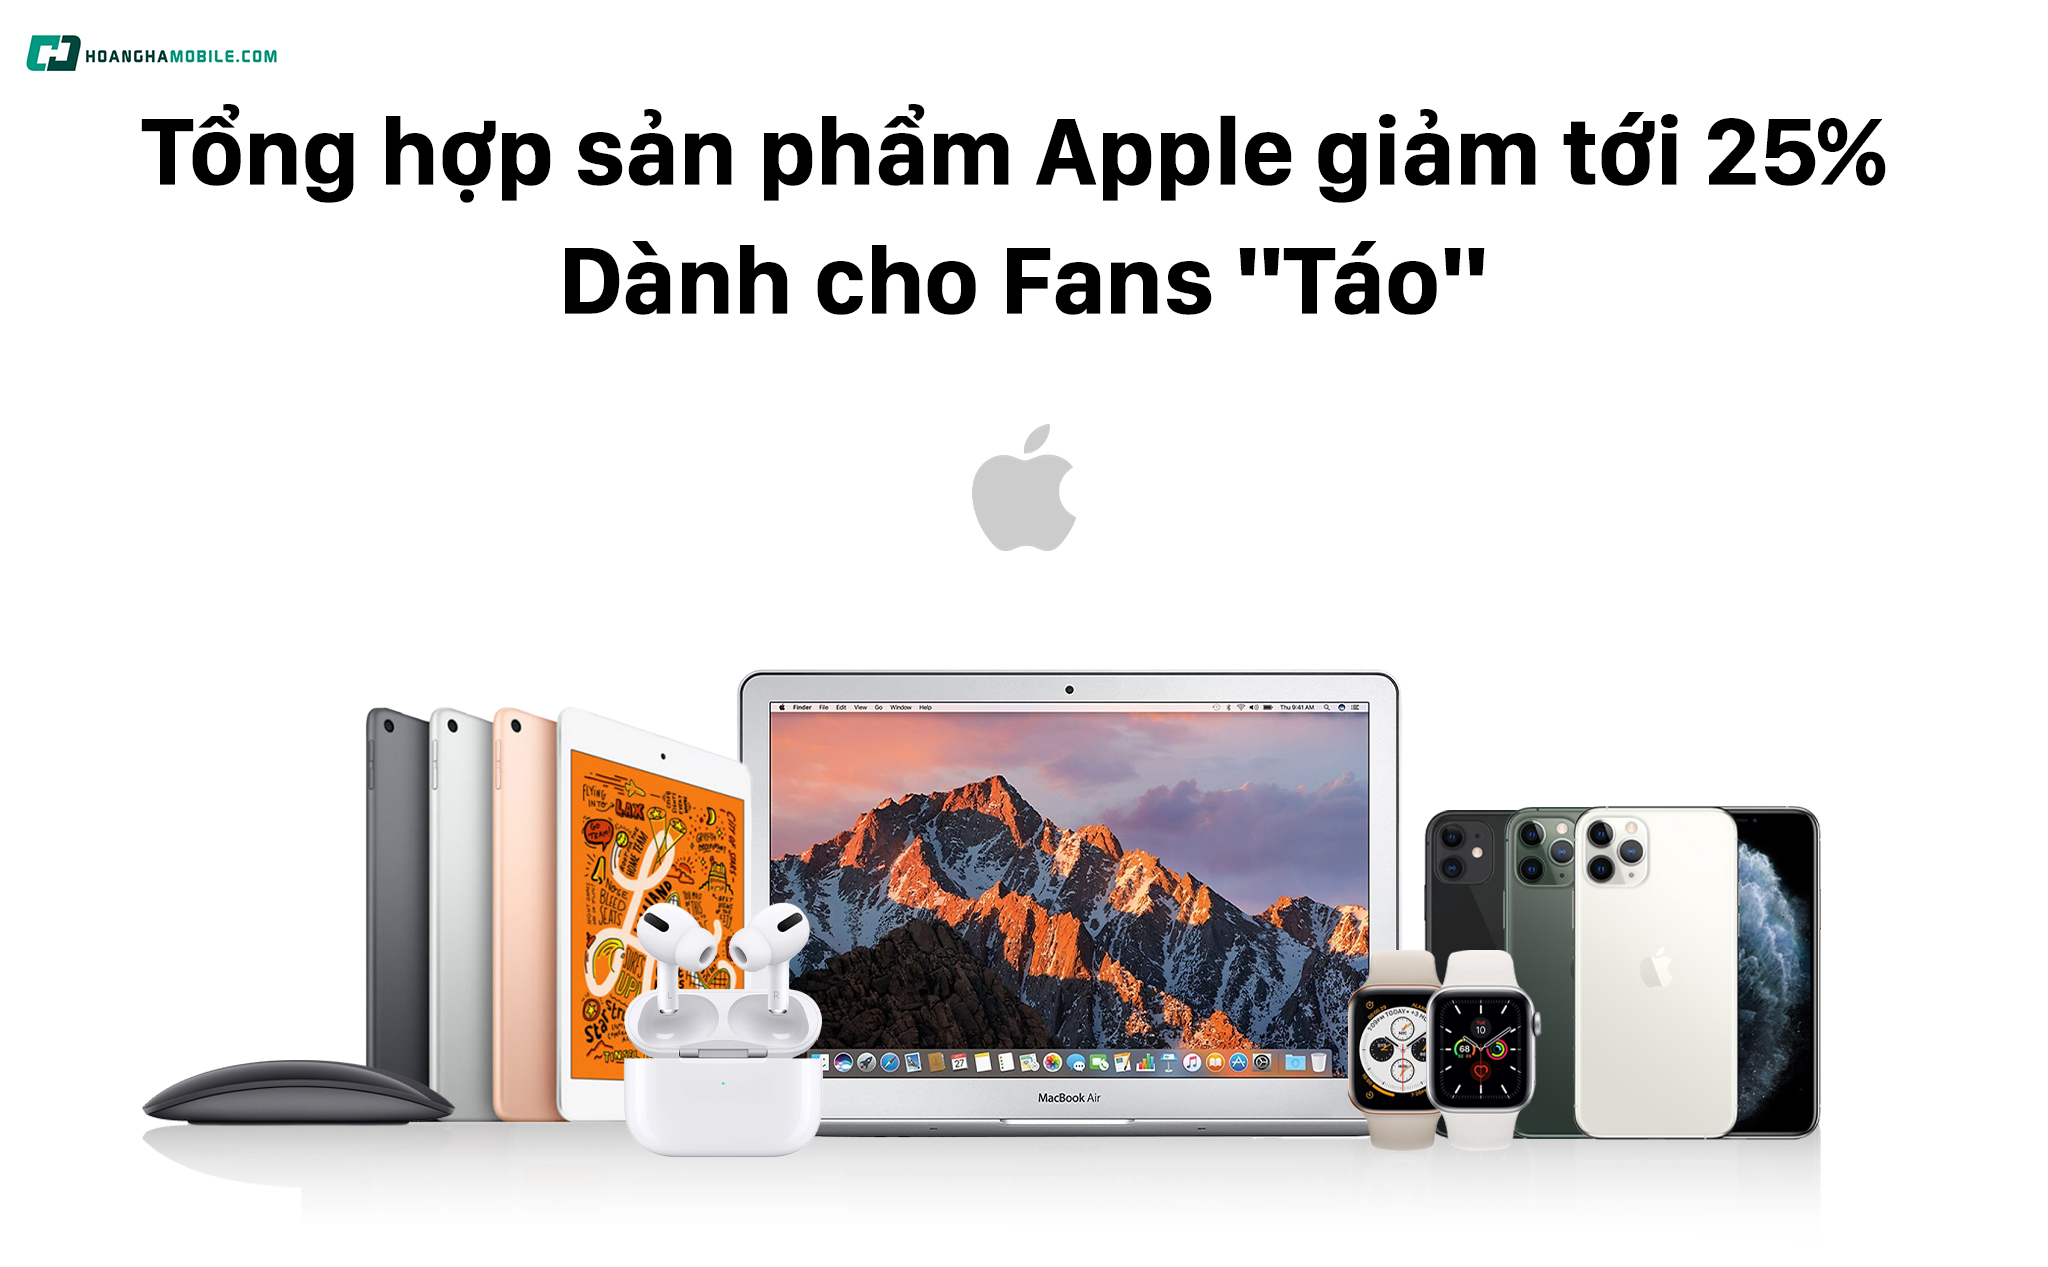 [QC] Tổng hợp các sản phẩm Apple giảm tới 25% dành cho Fans “Táo”